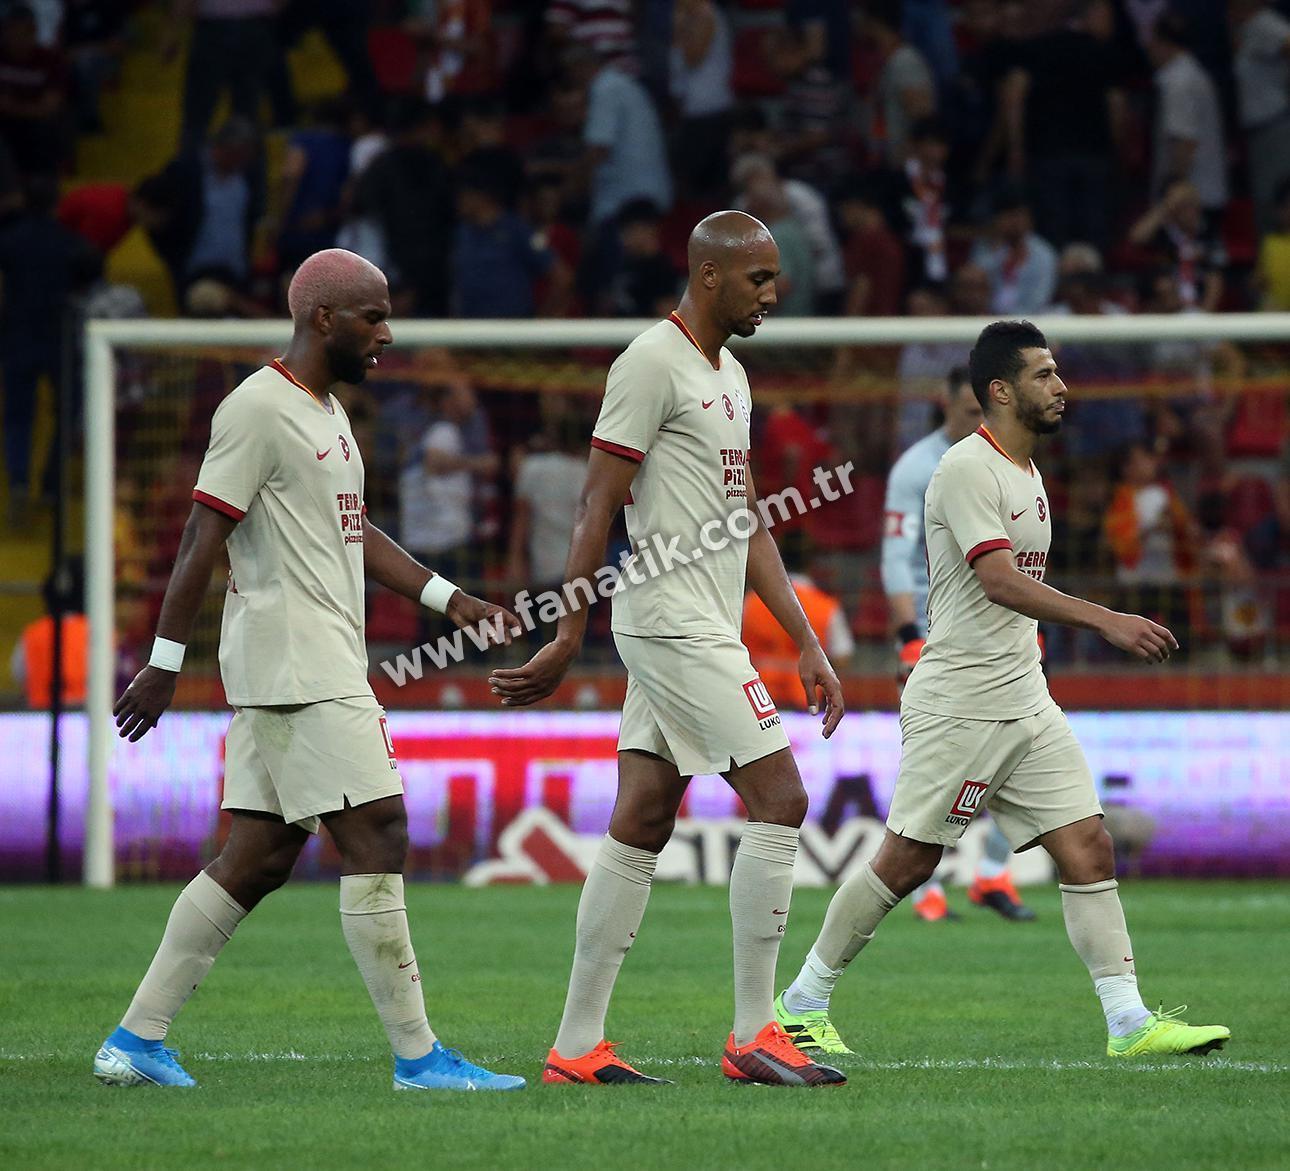 (ÖZET) Kayserispor - Galatasaray maç sonucu: 2-3